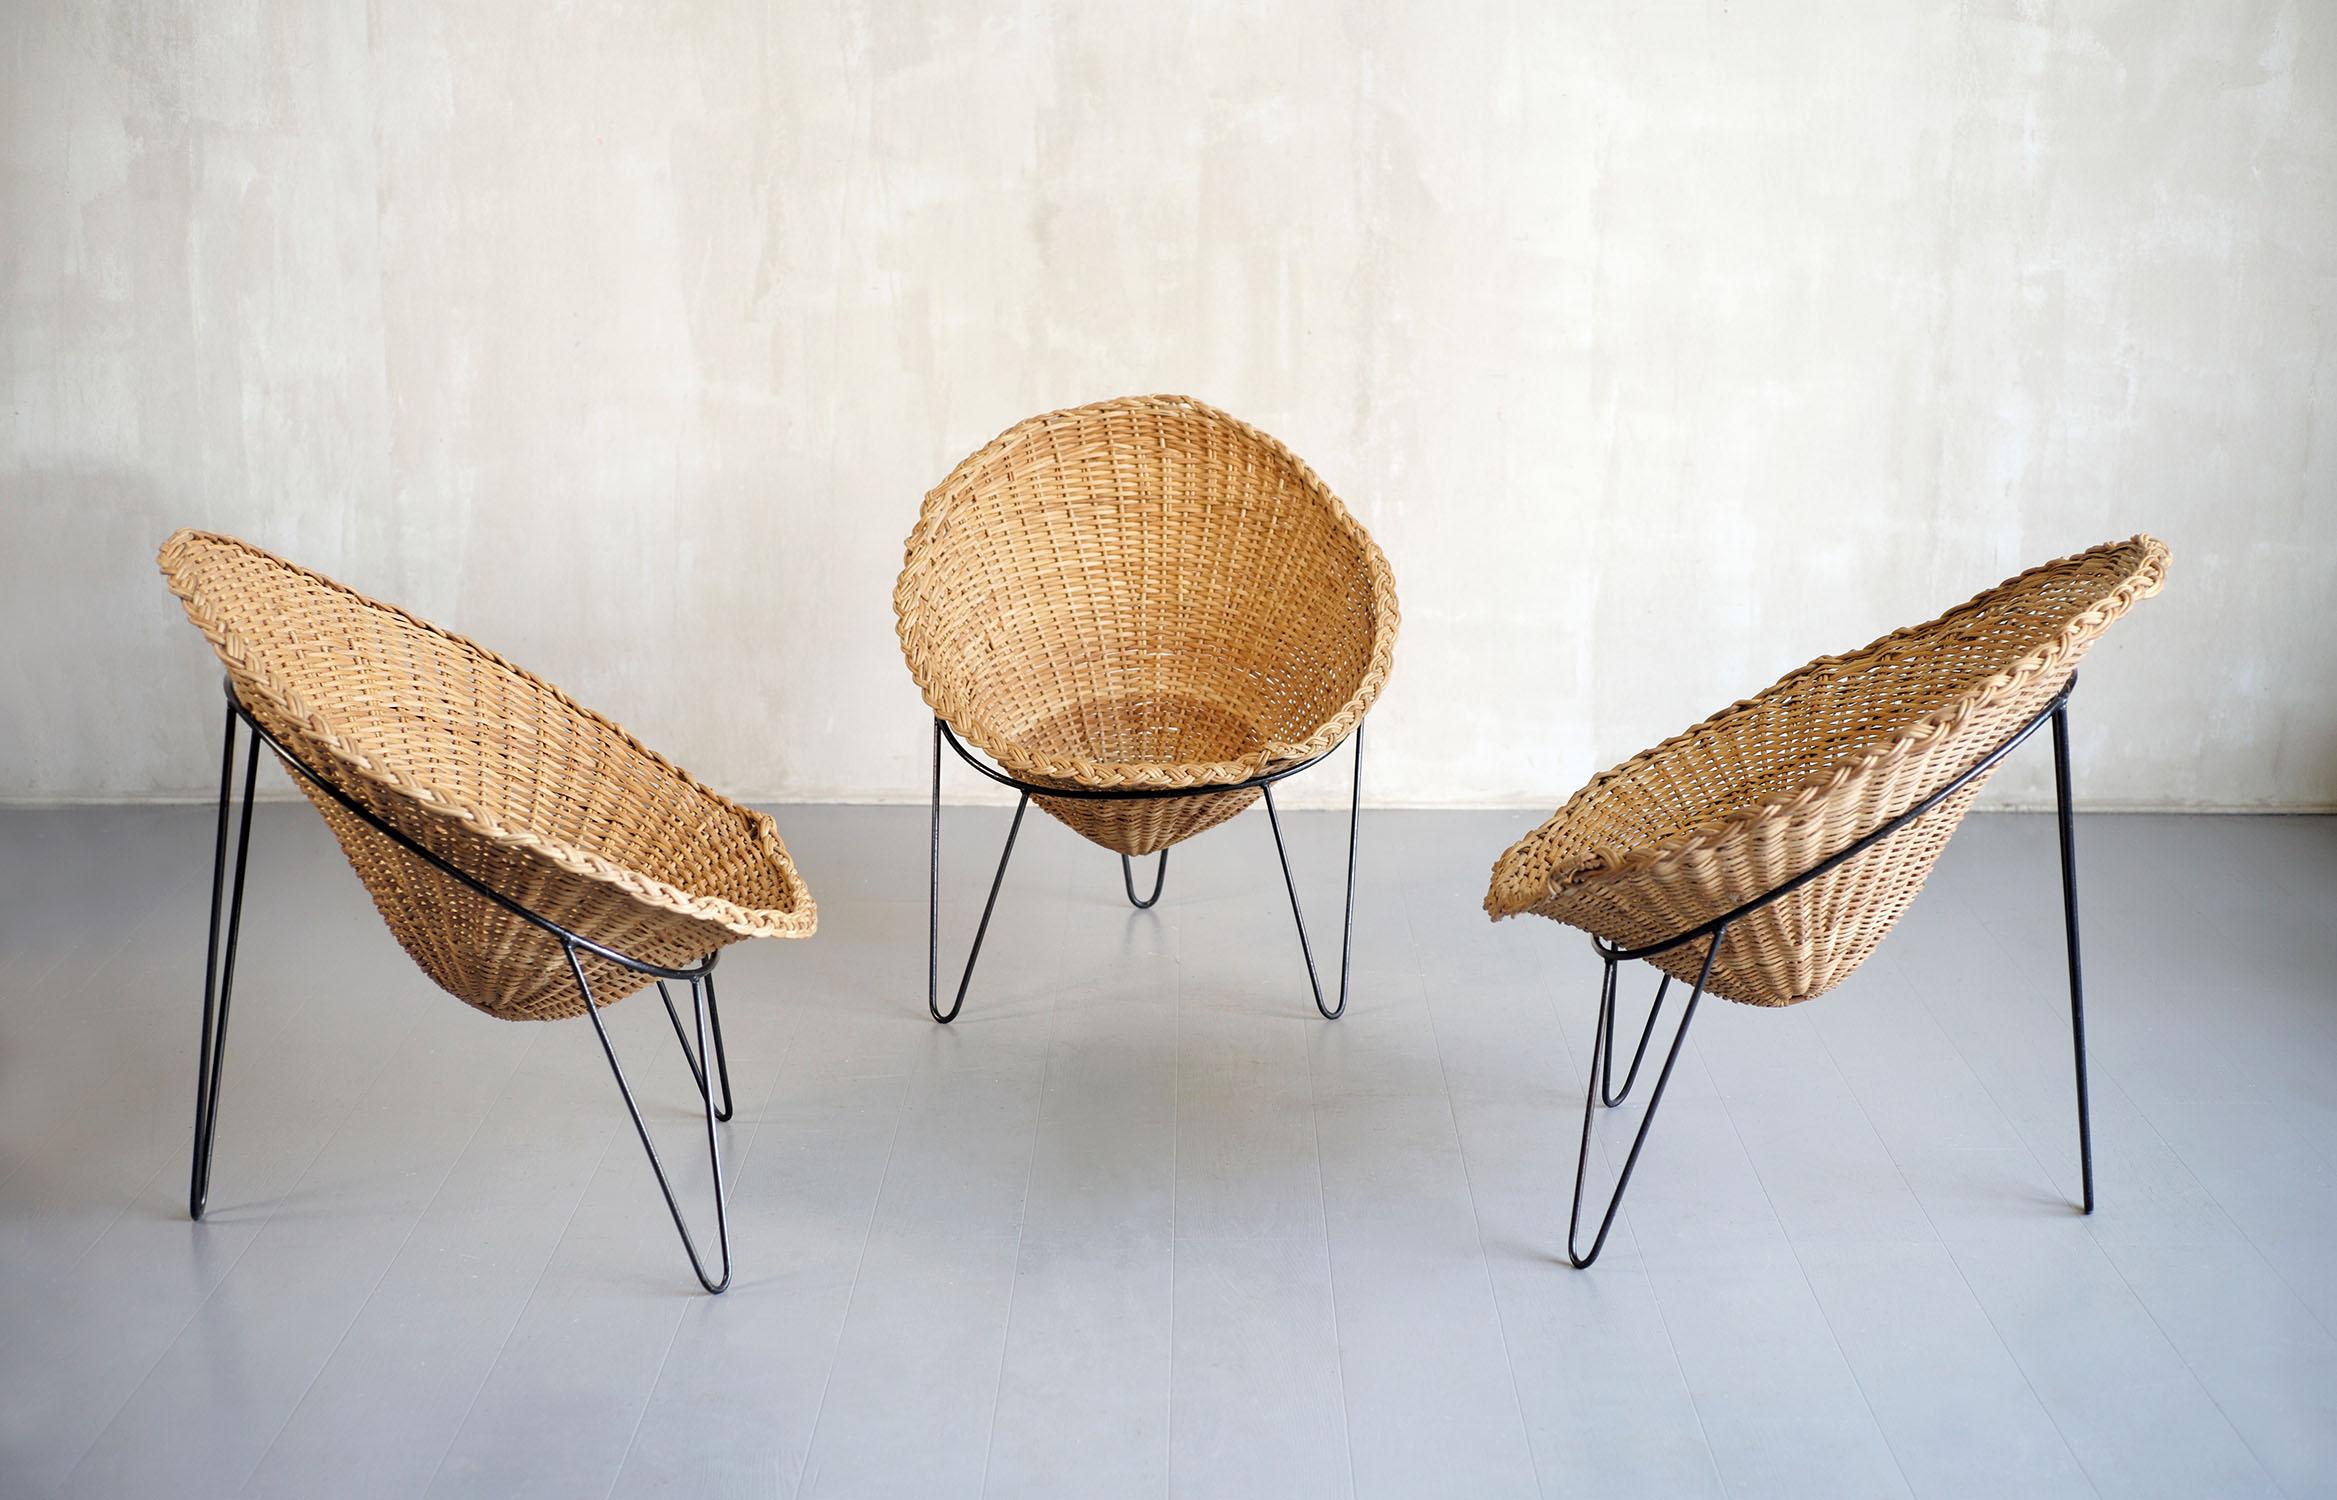 Ensemble de trois fauteuils en rotin tressé attribués à Roberto Mango, Italie 1950. La structure solide en fer tubulaire est laquée en noir, le coquillage en forme de chapeau de sorcière est encastré dans un cercle. Très confortables, ces sièges au